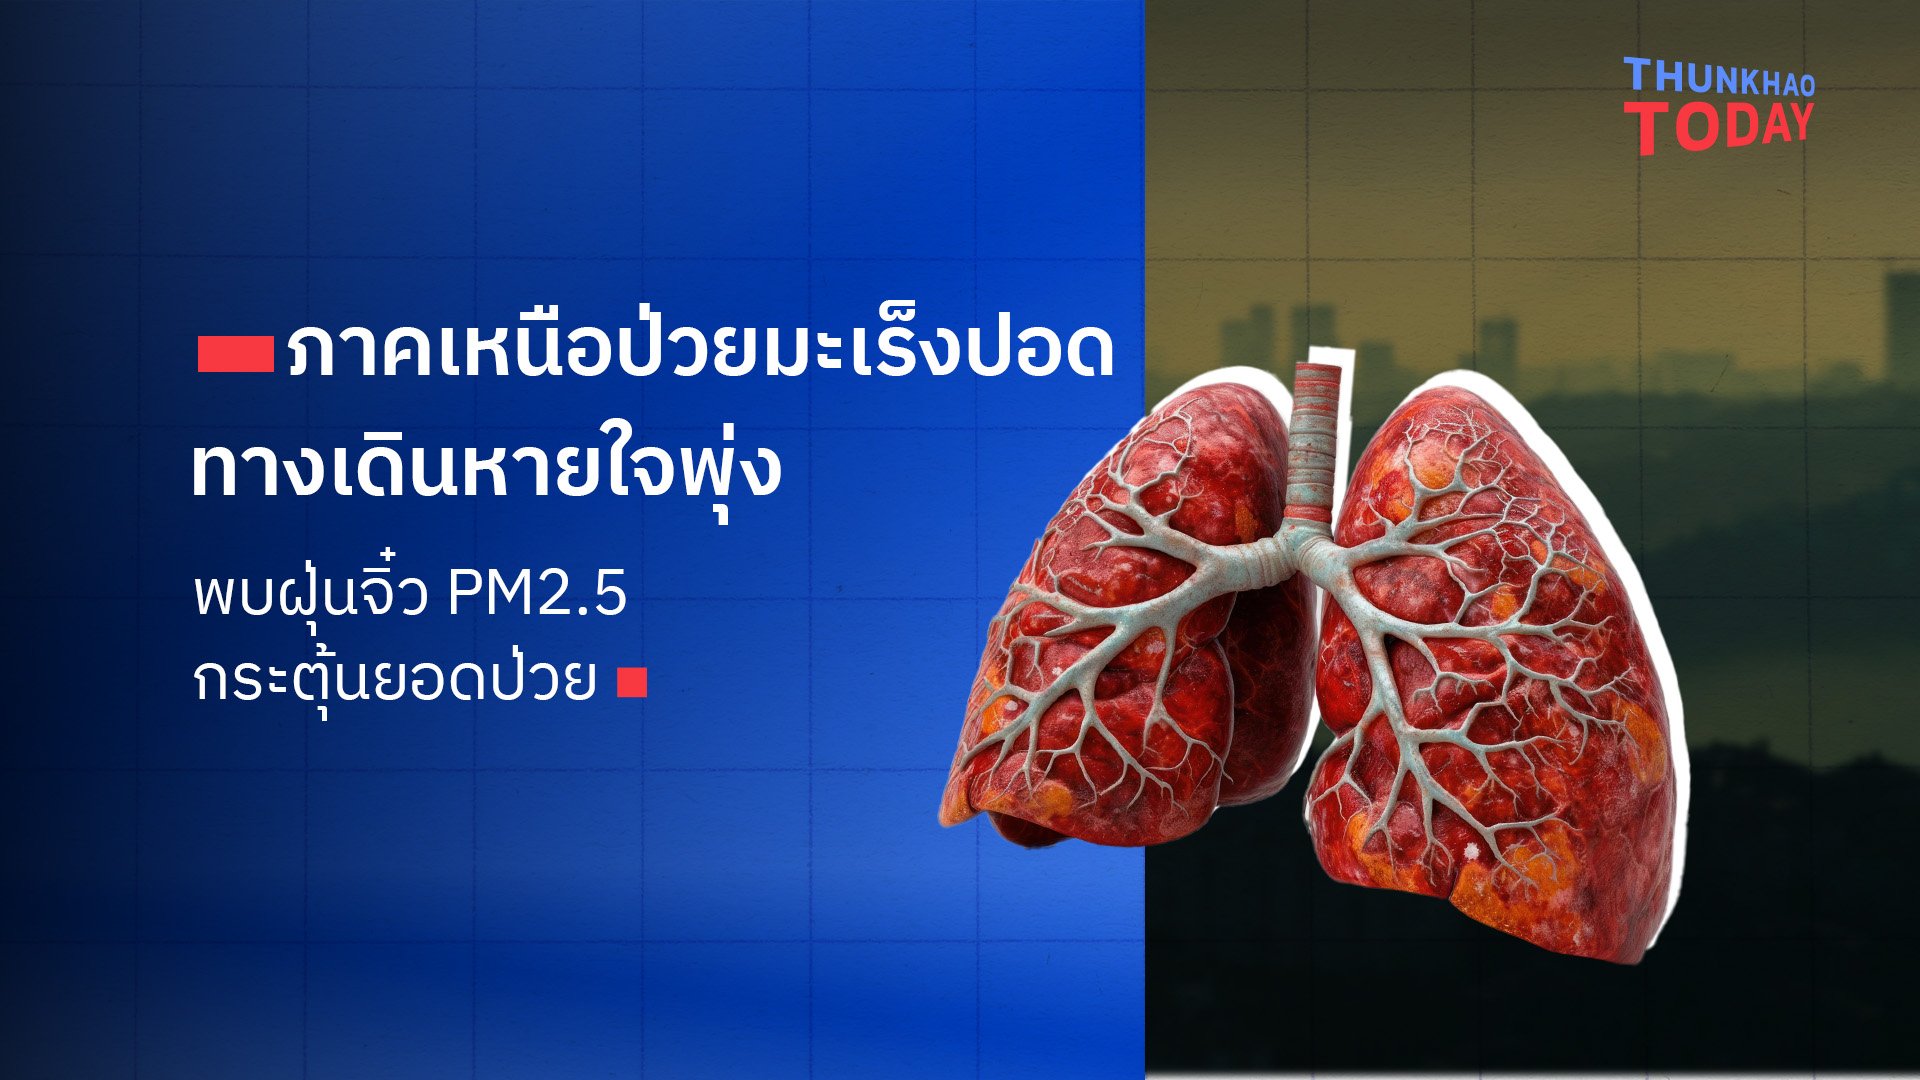 “คนภาคเหนือป่วยมะเร็งปอด ทางเดินหายใจพุ่ง พบฝุ่นจิ๋ว PM2.5 กระตุ้นยอดป่วย